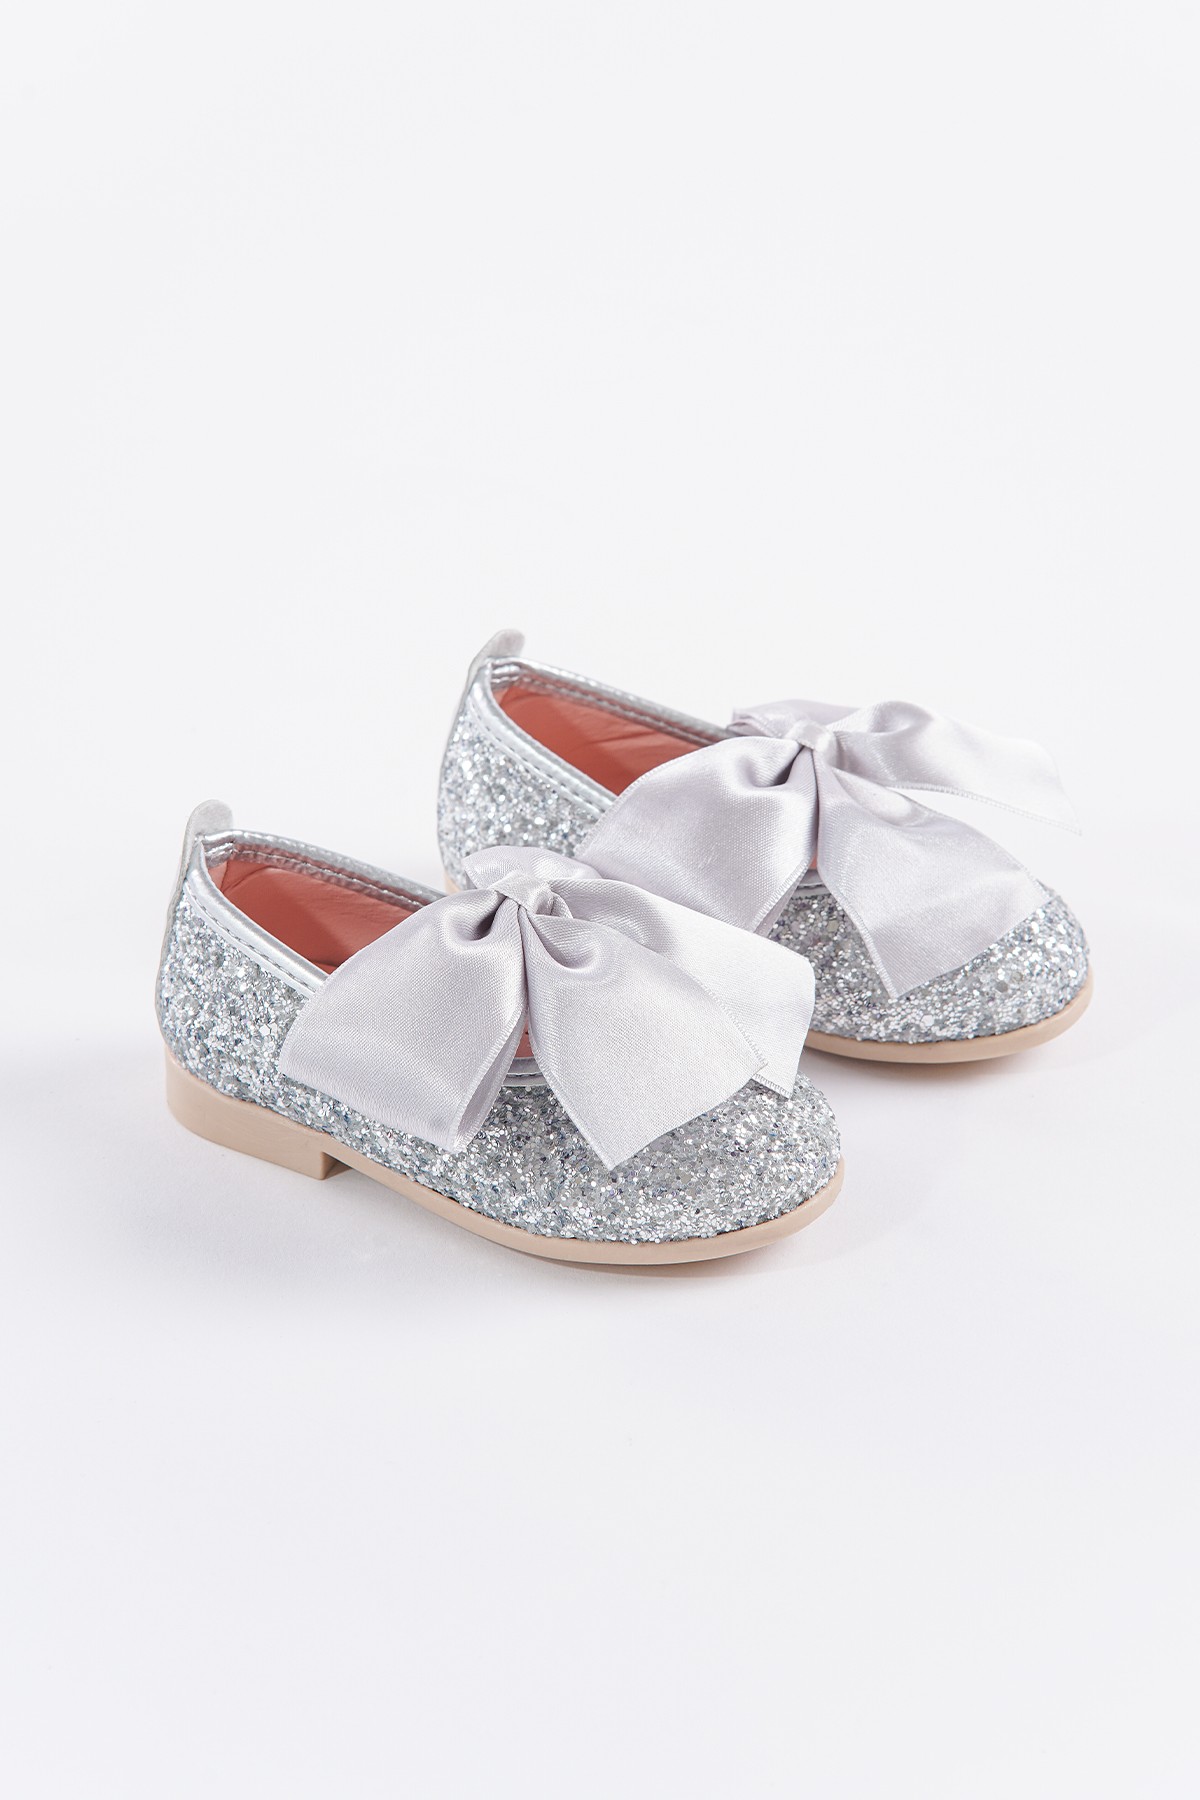 SHUU Fiyonklu Cam Kırığı Taş Kaplama Kız Çocuk Ayakkabı - Gümüş